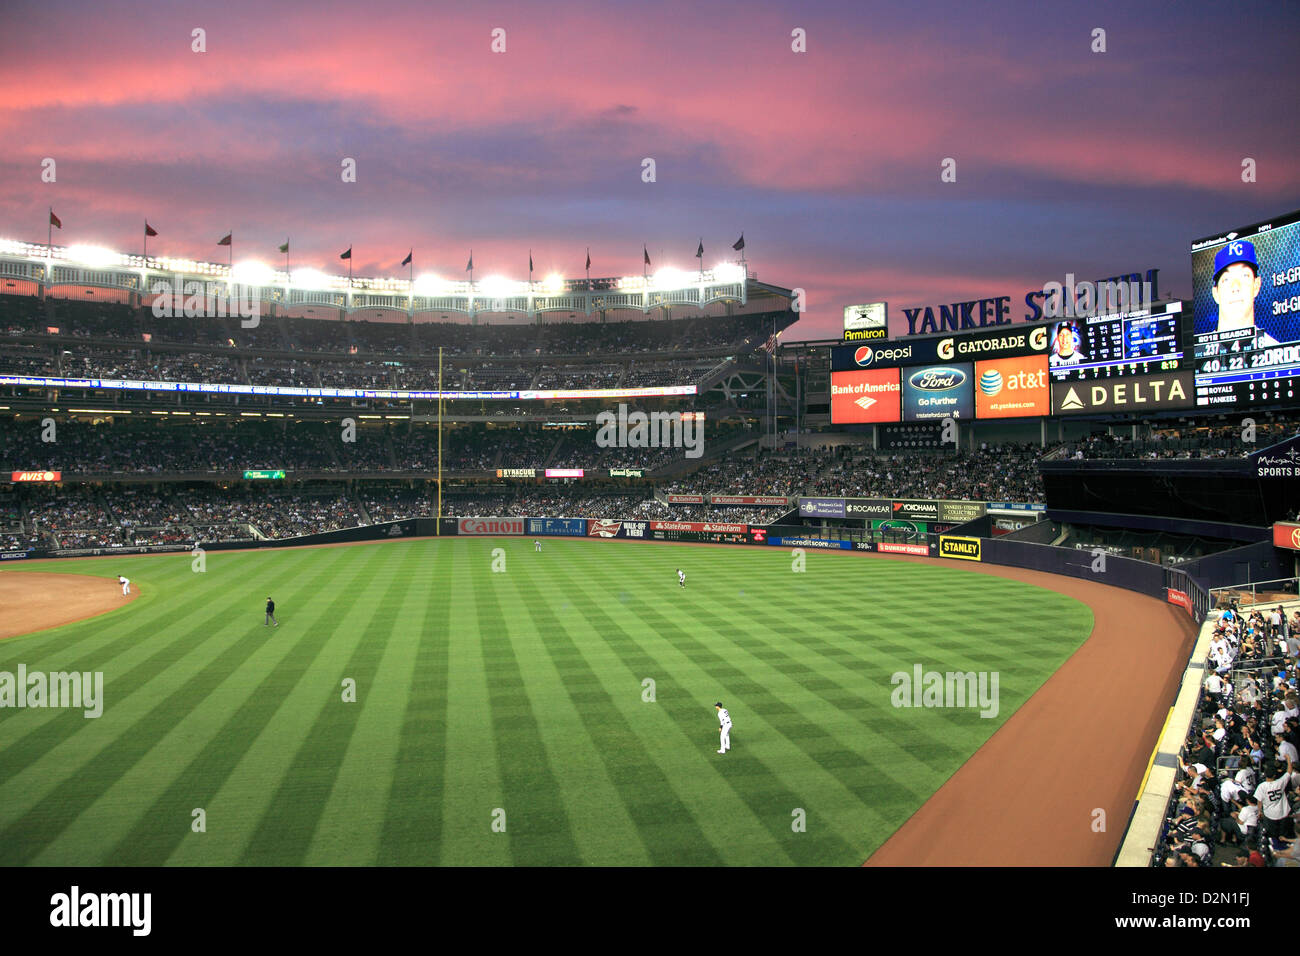 Juego de béisbol, el Yankee Stadium, Bronx, Nueva York, Estados Unidos de América, América del Norte Foto de stock